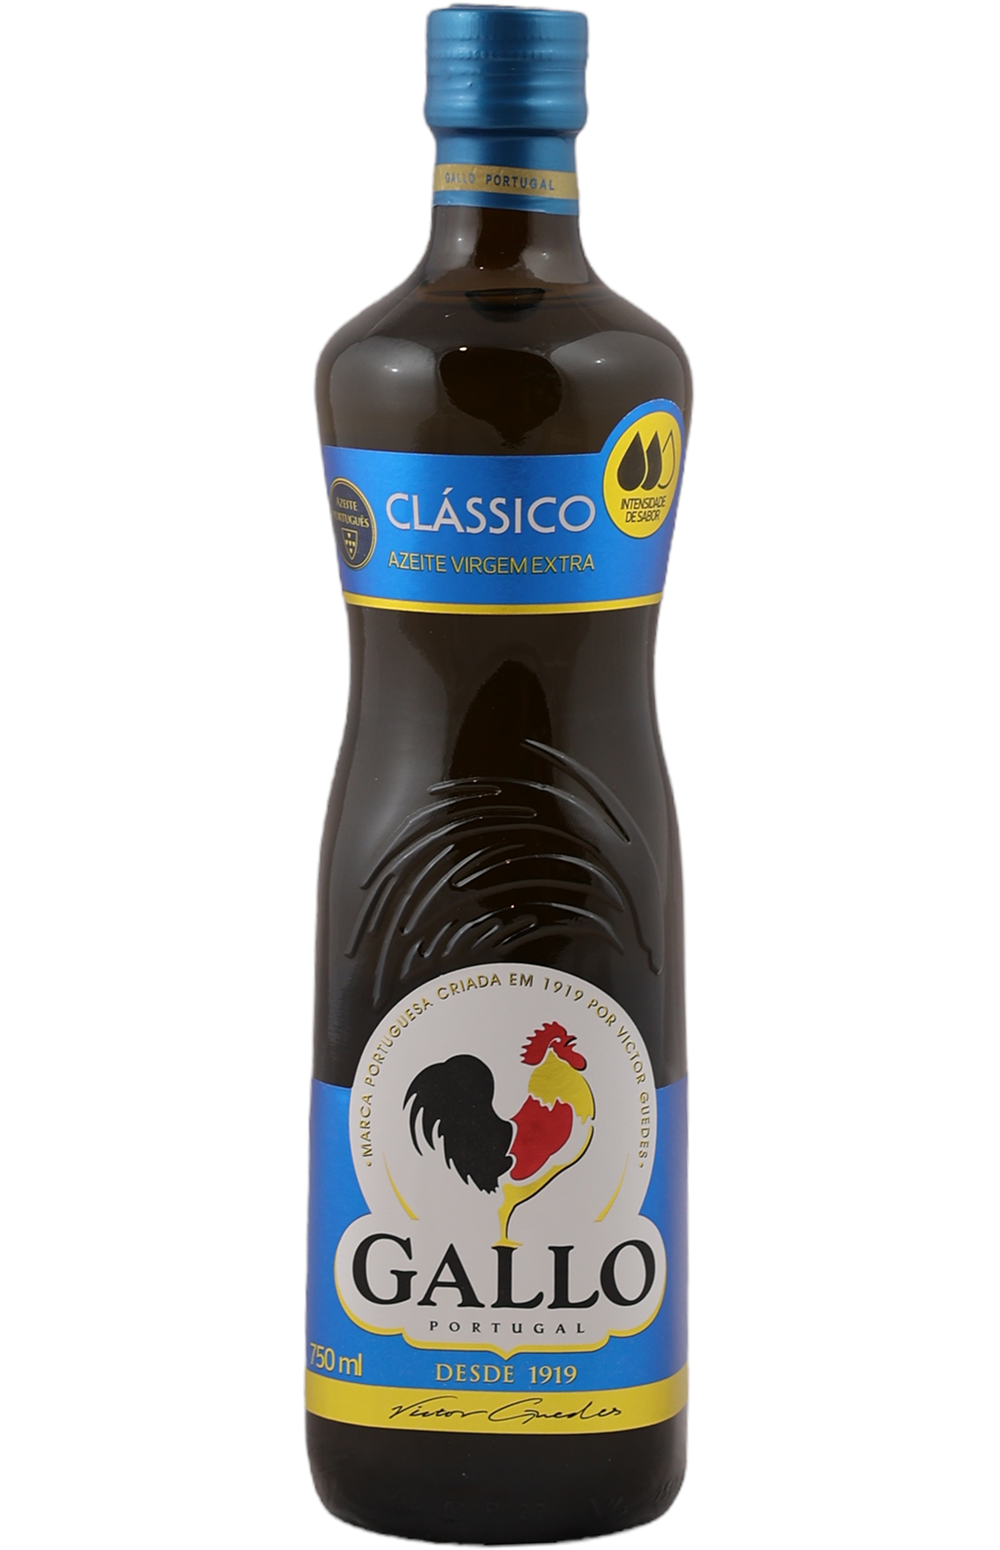 Gallo Azeite Classico